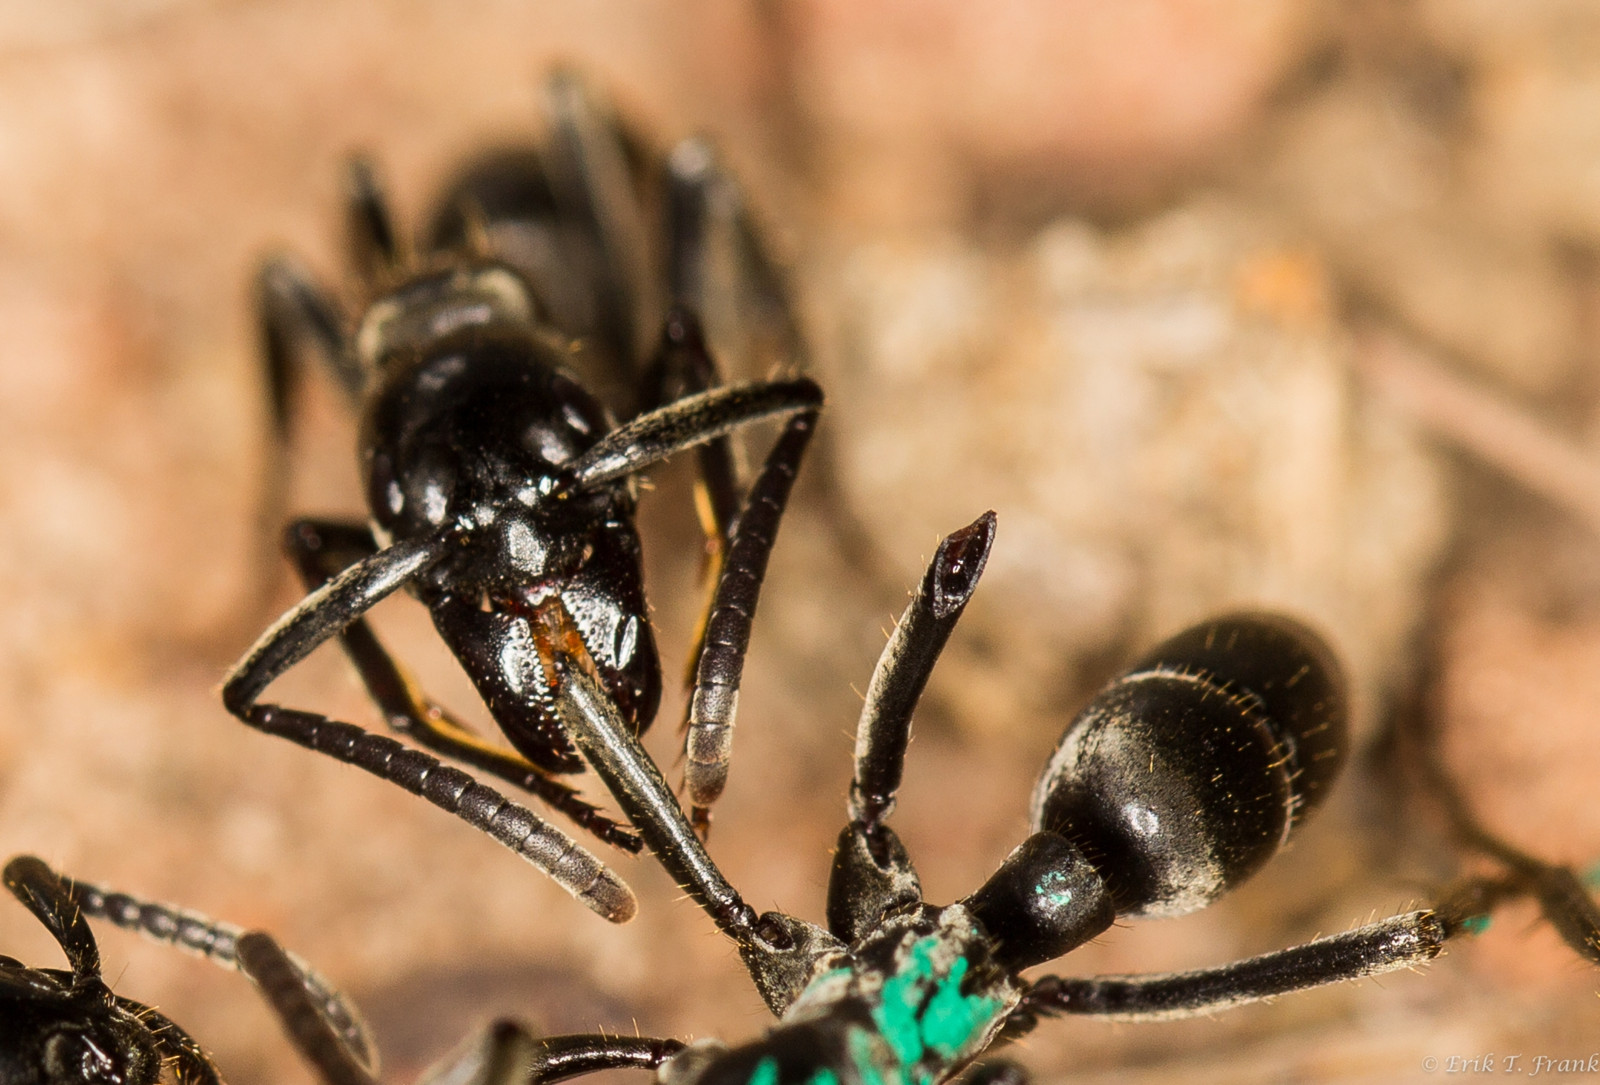 Erste Hilfe: Das Ameisen-Sekret wird auf das verletzte Bein aufgetragen.